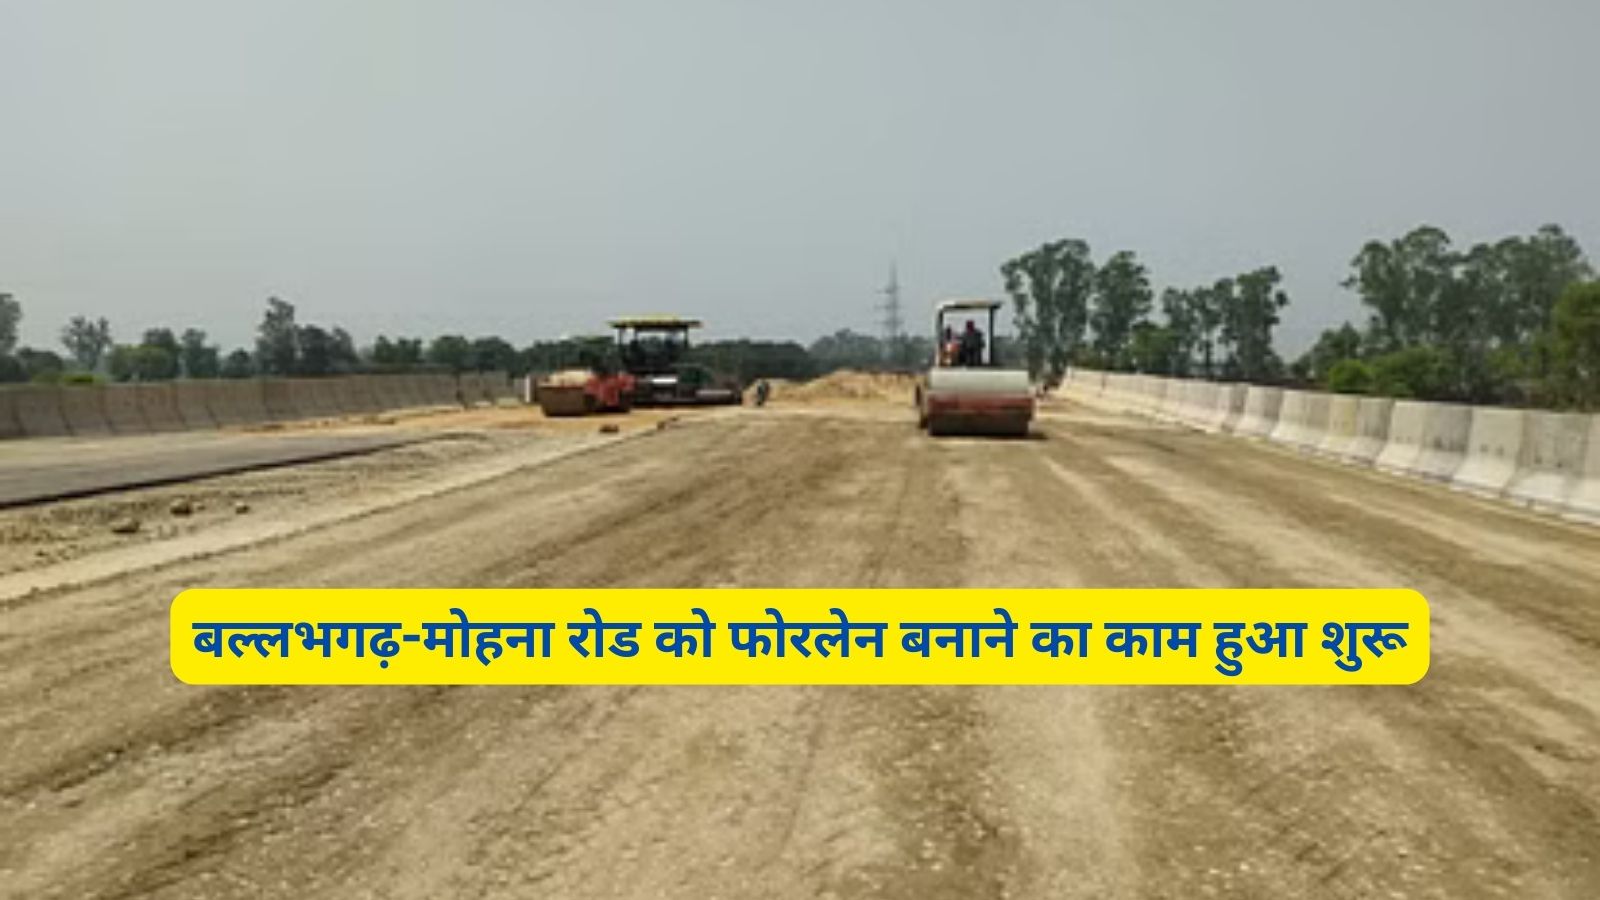 Ballabhgarh-Mohana Four Lane:बल्लभगढ़-मोहना रोड को फोरलेन बनाने का काम हुआ शुरू,इस रोड से होगा सीधा कनेक्ट